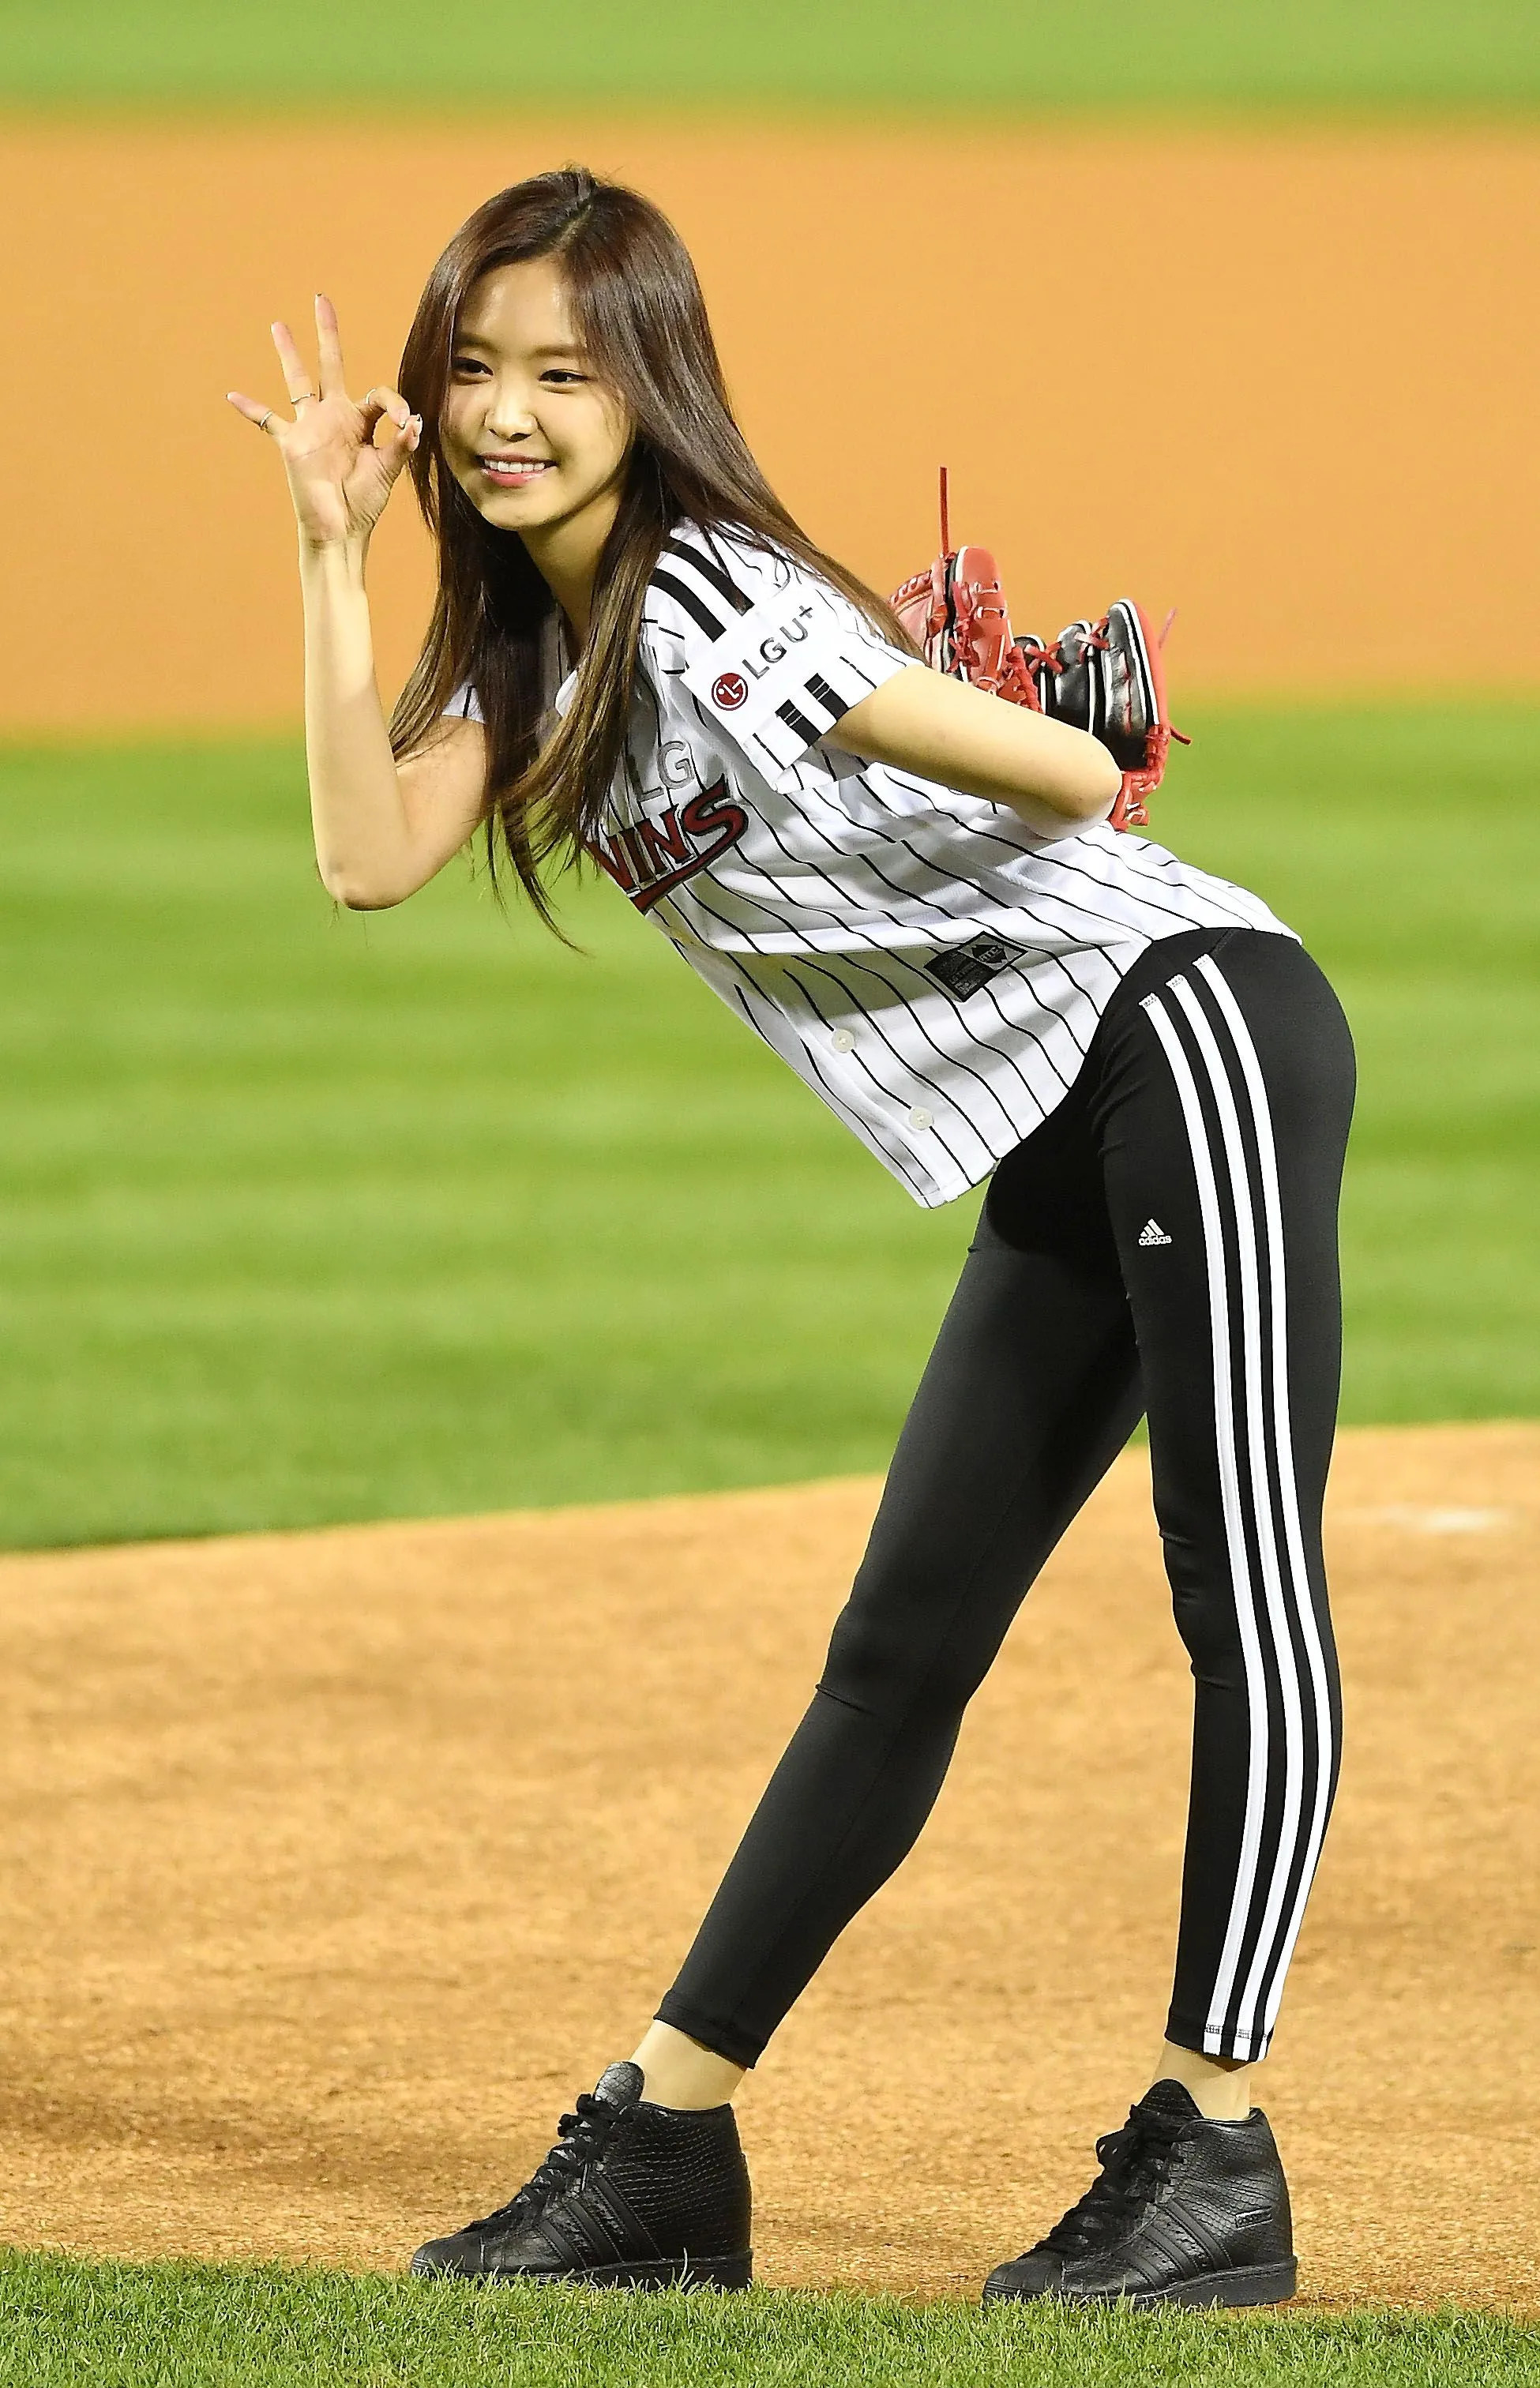 Baseball Girl stock image. Image of korean, softball, young - 7887655